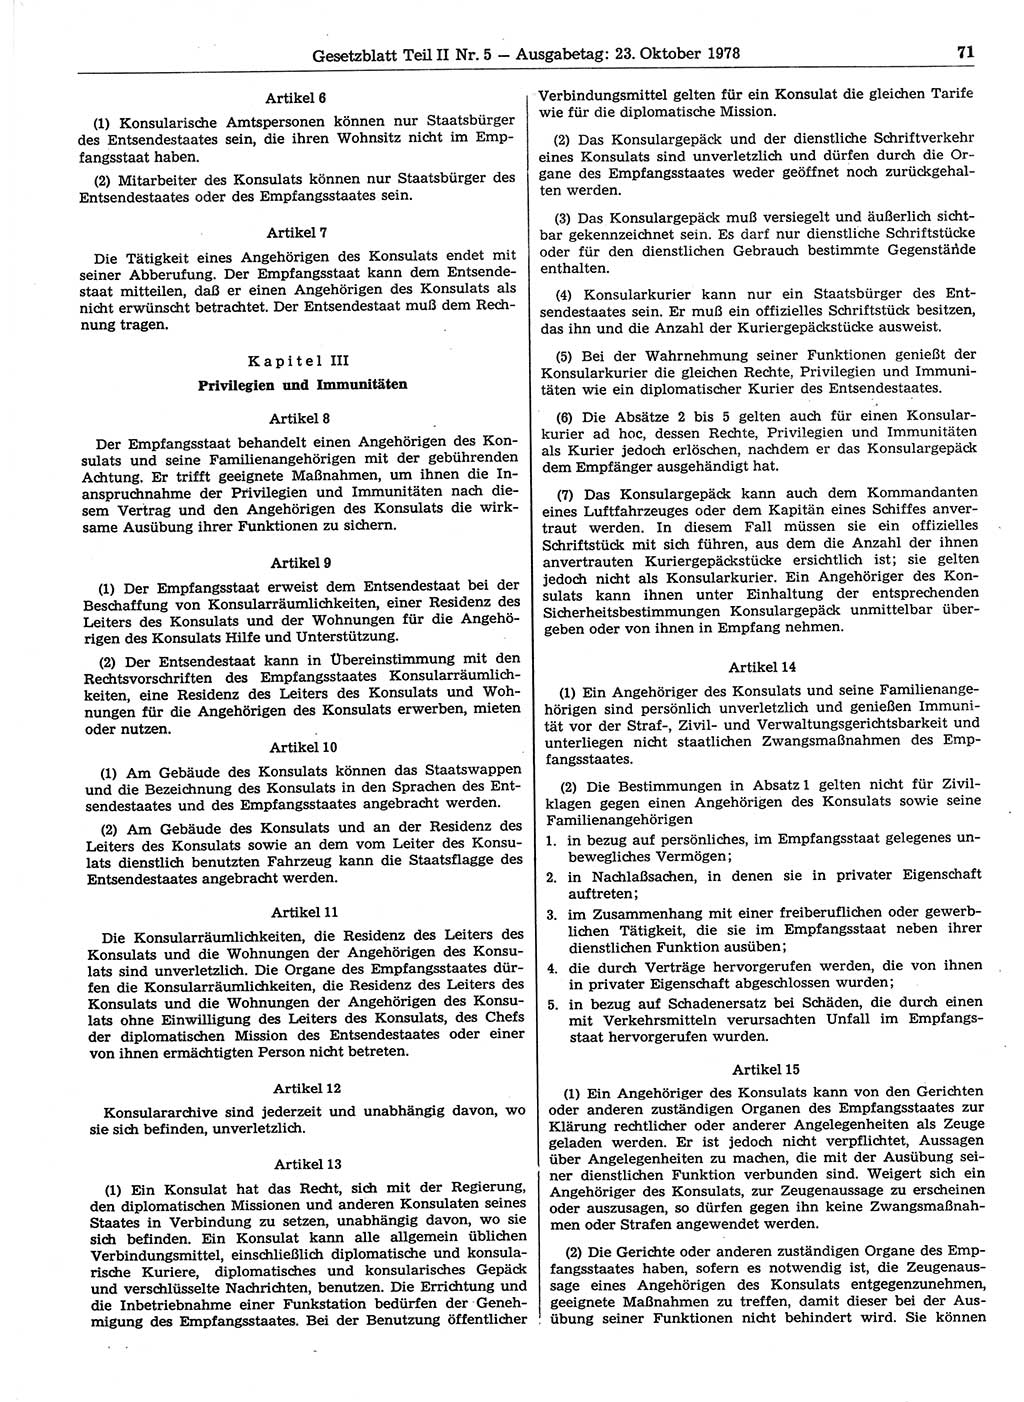 Gesetzblatt (GBl.) der Deutschen Demokratischen Republik (DDR) Teil ⅠⅠ 1978, Seite 71 (GBl. DDR ⅠⅠ 1978, S. 71)